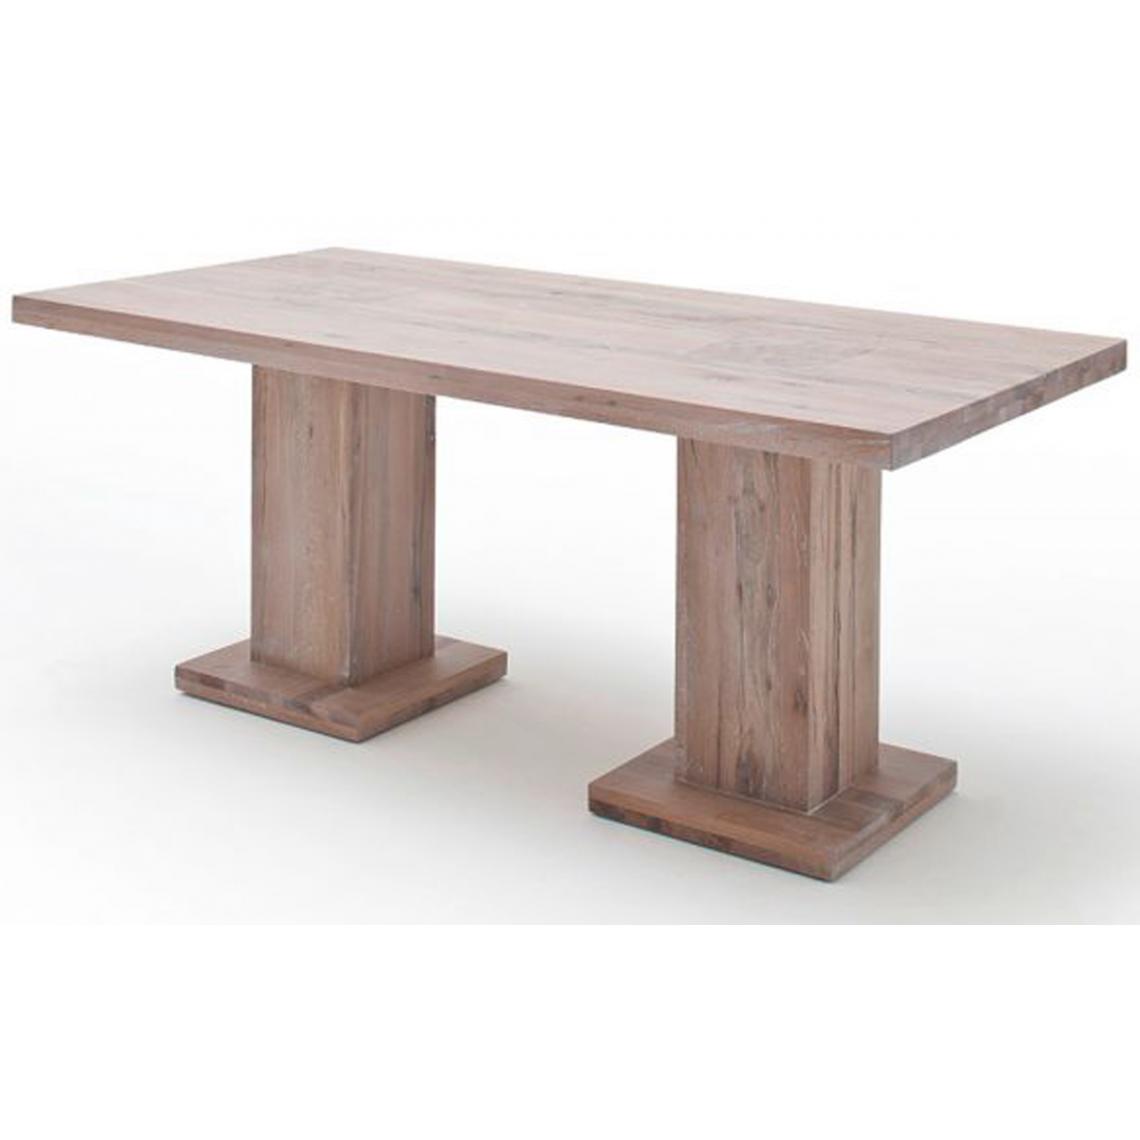 Pegane - Table à manger en chêne chaulé avec 2 colonnes - L.220 x H.76 x P.100 cm -PEGANE- - Tables à manger